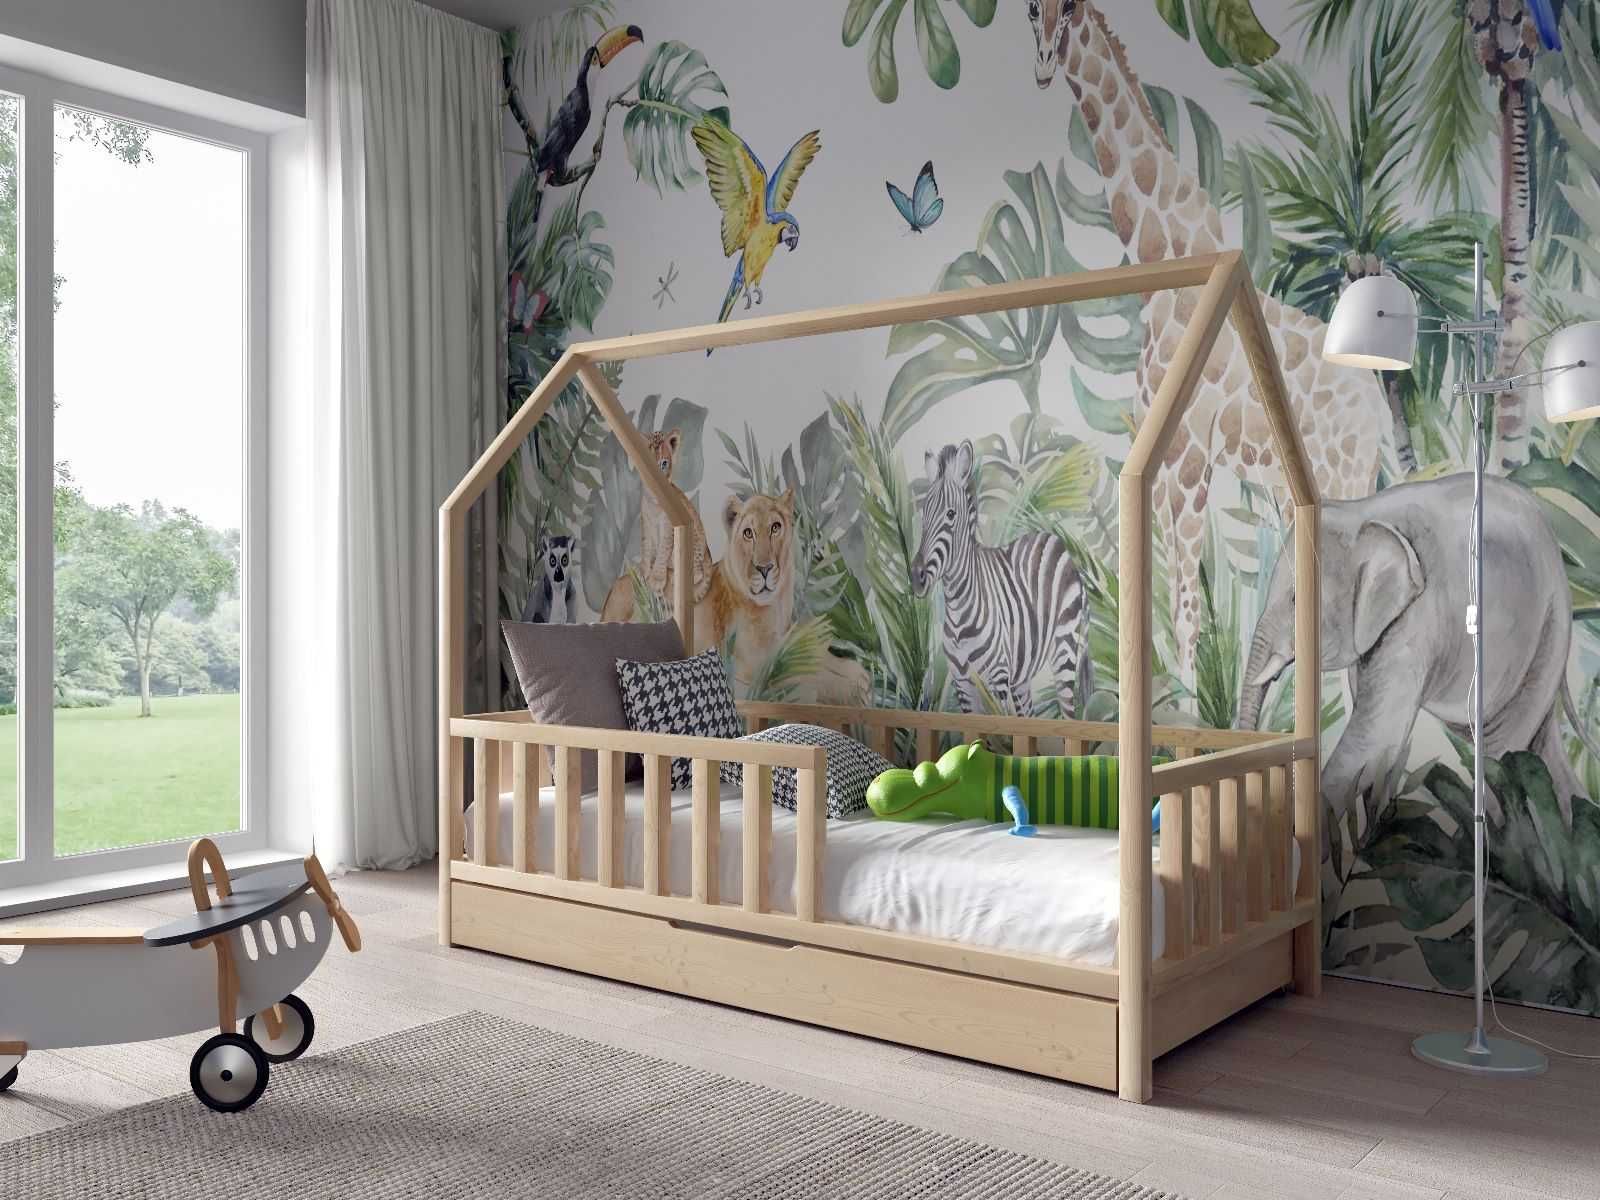 Łóżko dla dzieci domek antoś 160x80 - materac w zestawie GRATIS